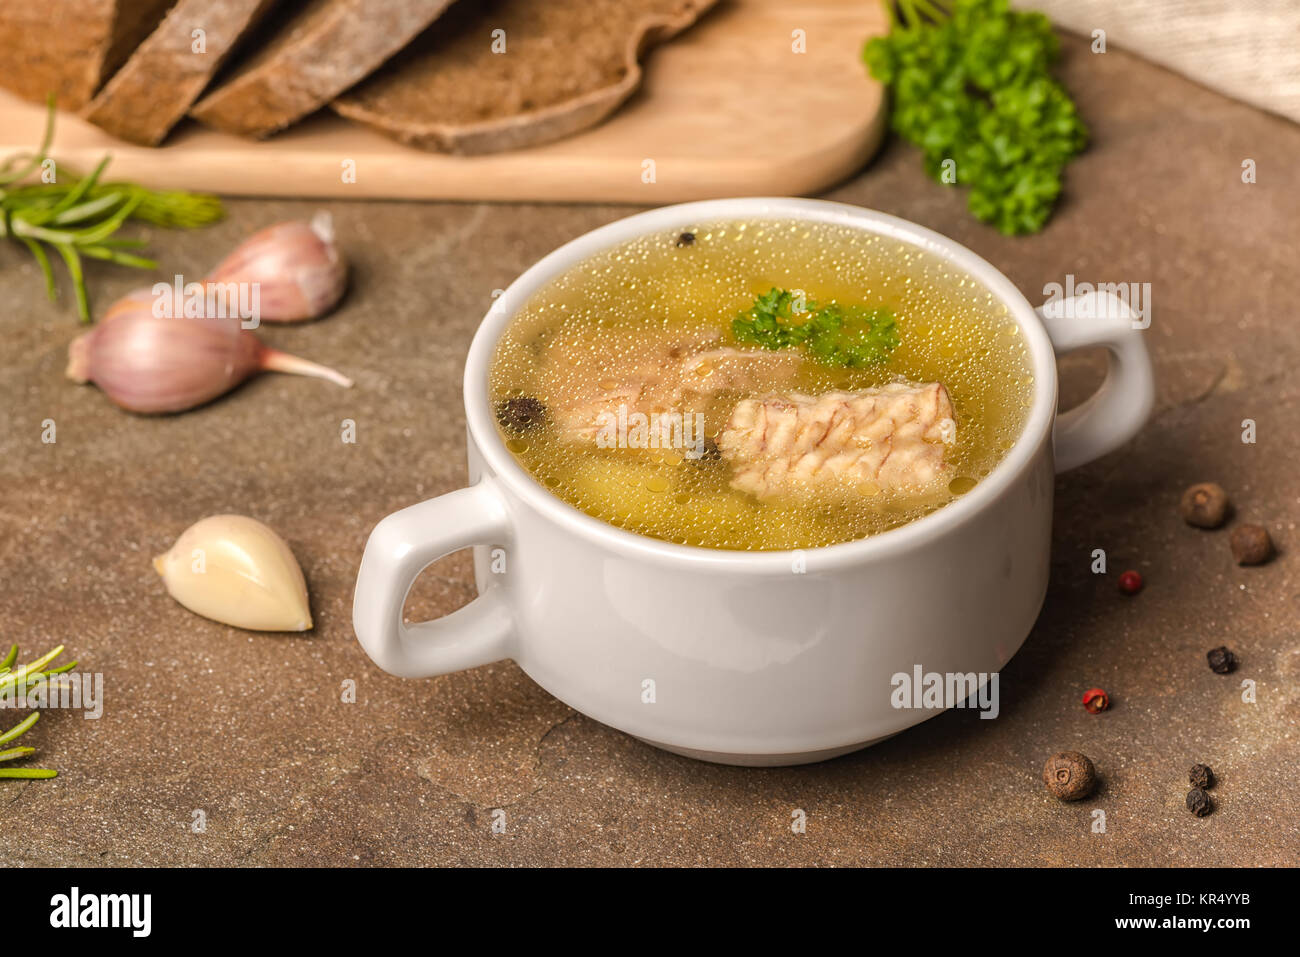 Trasparente fresca zuppa di pesce con lo storione, patate in piastra bianca, decorato di aglio, foglie di prezzemolo e tagliate il pane di segale, mangiare sano Foto Stock